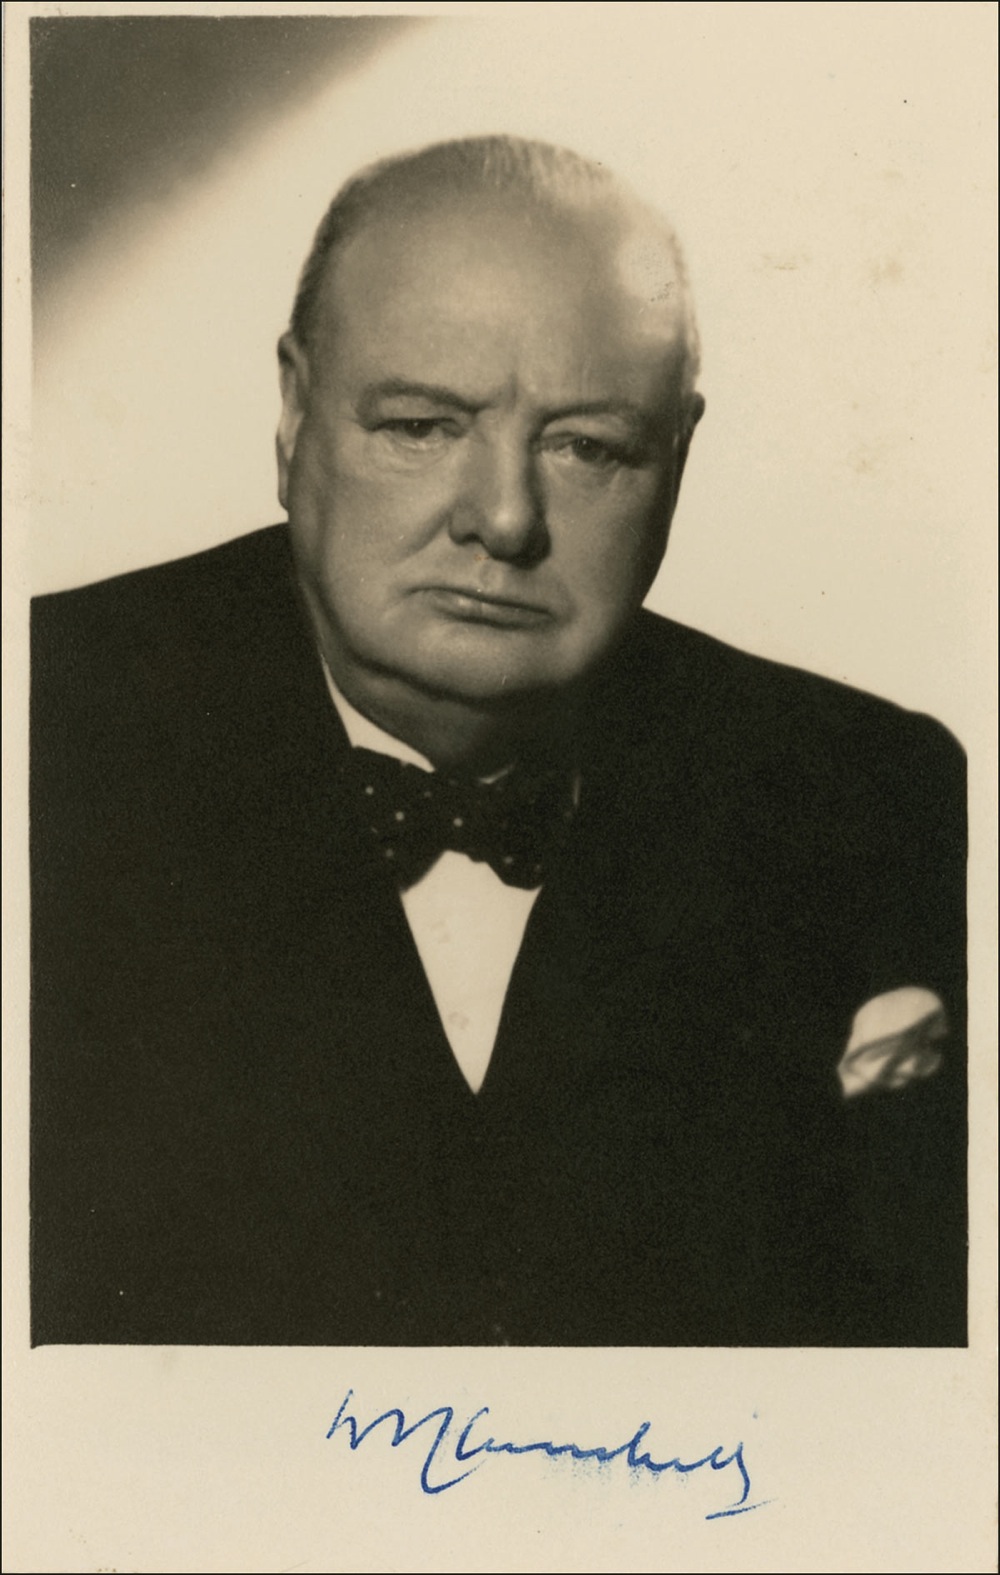 Lot #206 Winston Churchill